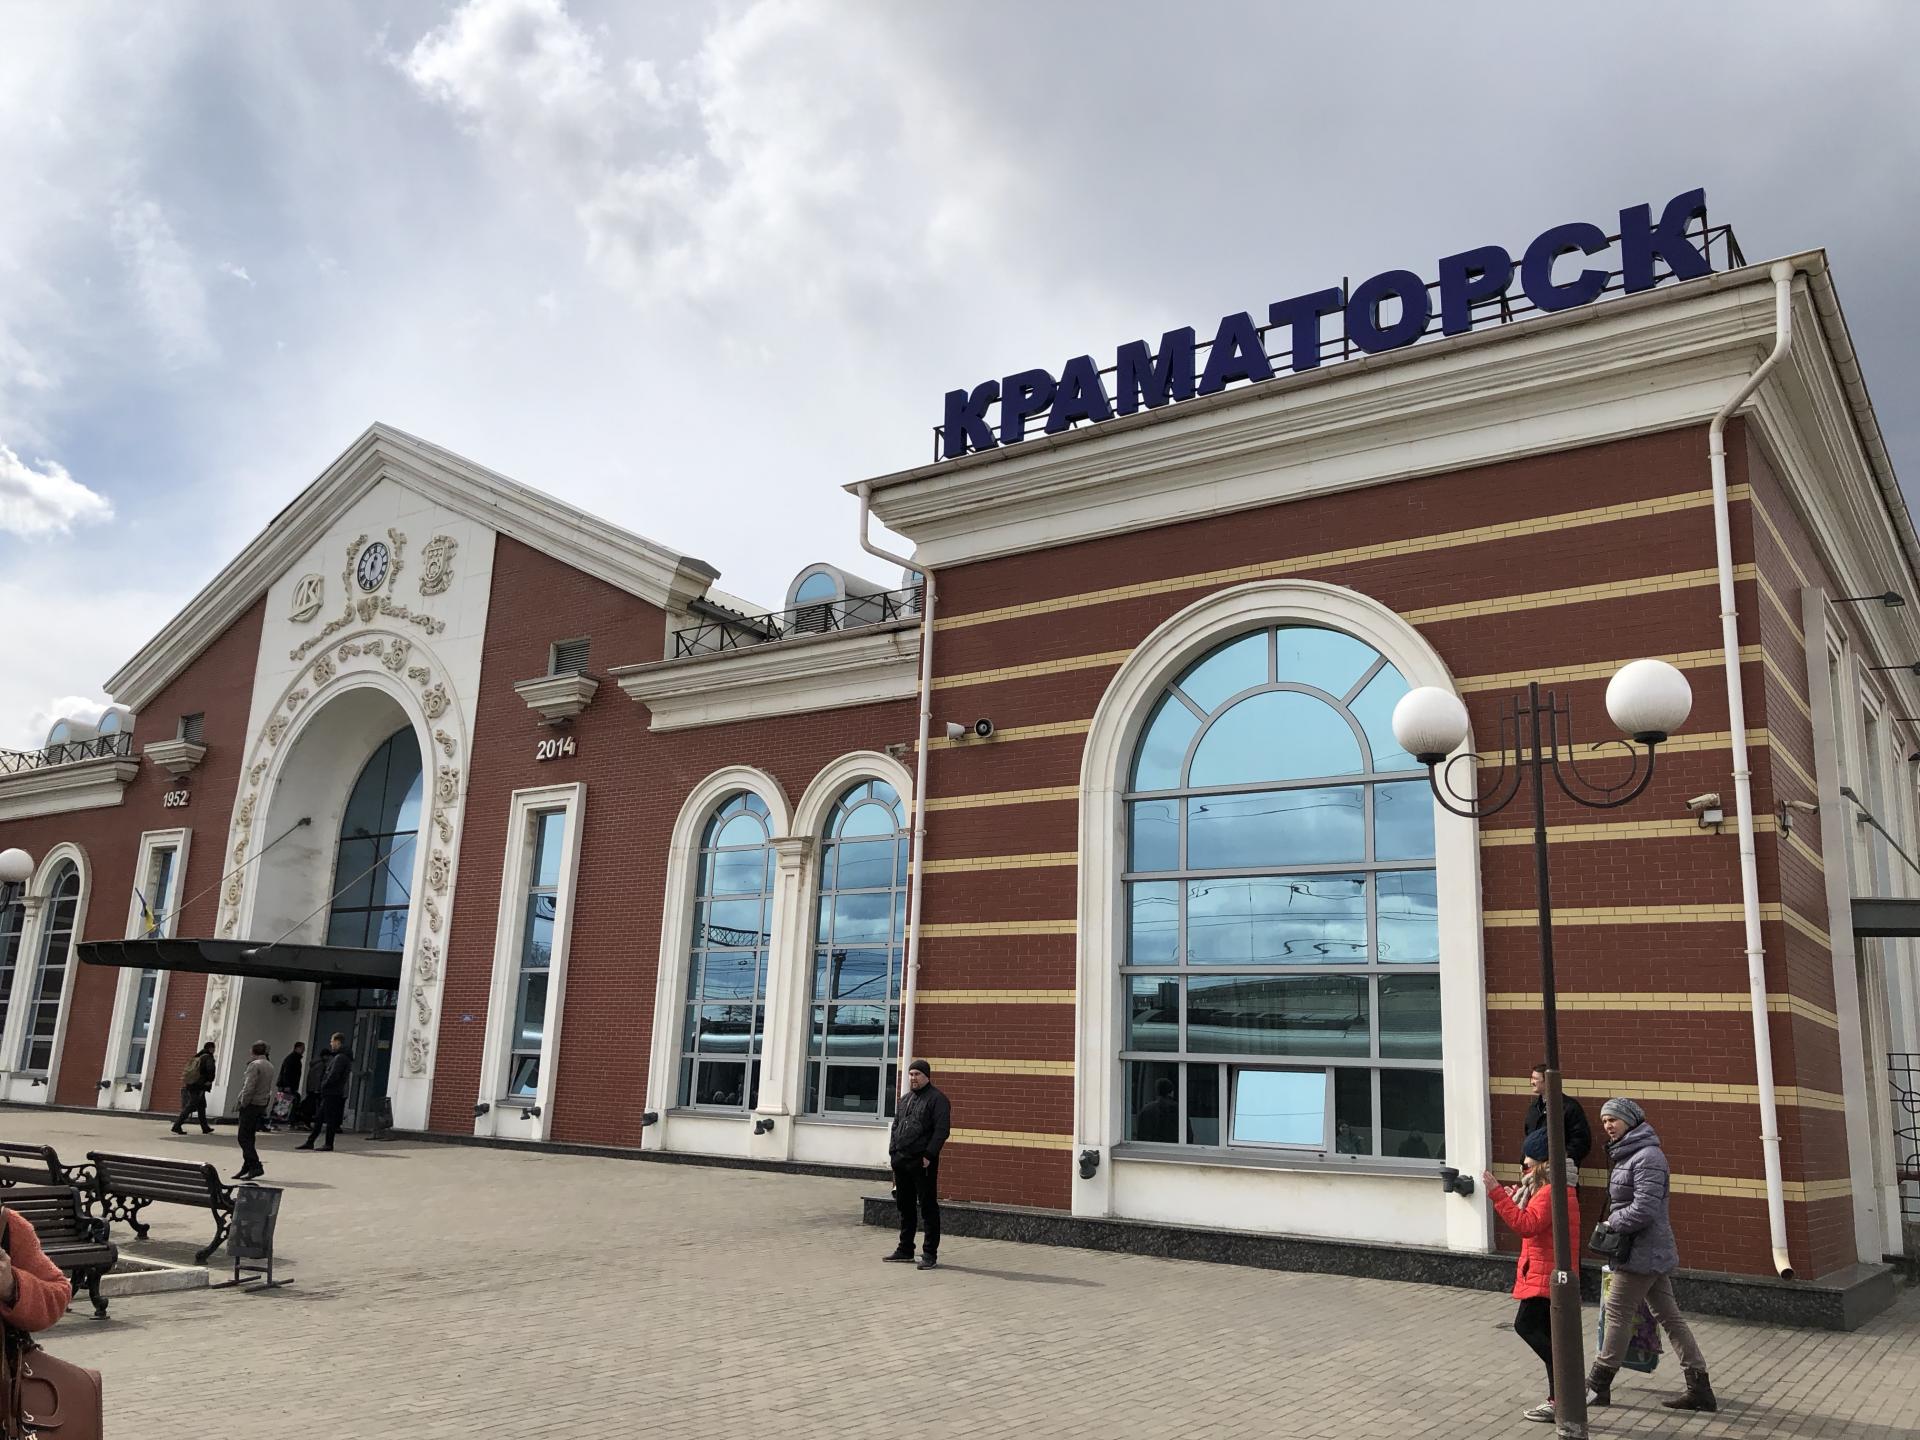 Zrekonštruovaná budova železničnej stanice vo východoukrajinskom Kramatorsku. V roku 2014 mesto na niekoľko mesiacov obsadili proruskí separatisti.